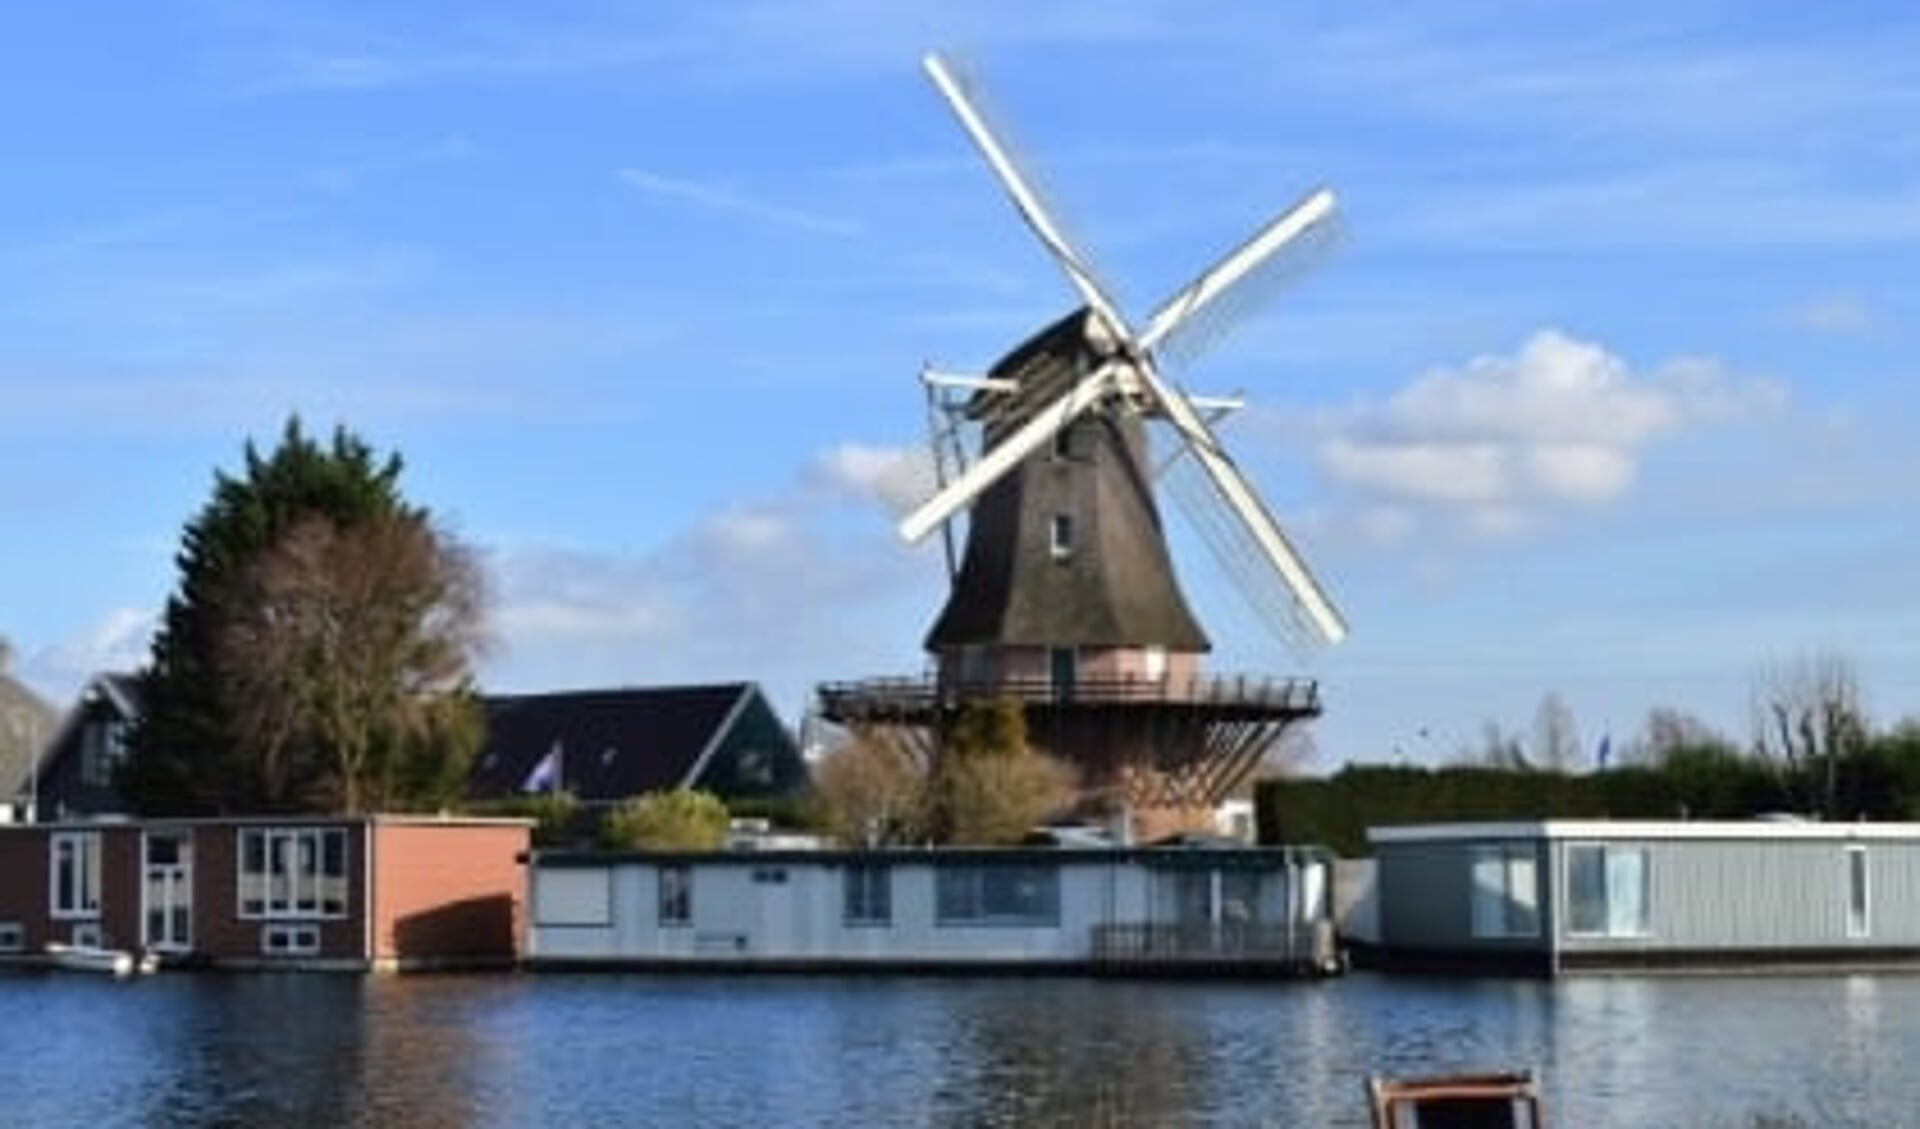 De Molen van Sloten ligt aan de ringvaart op de grens van Amsterdam en de Haarlemmermeer.